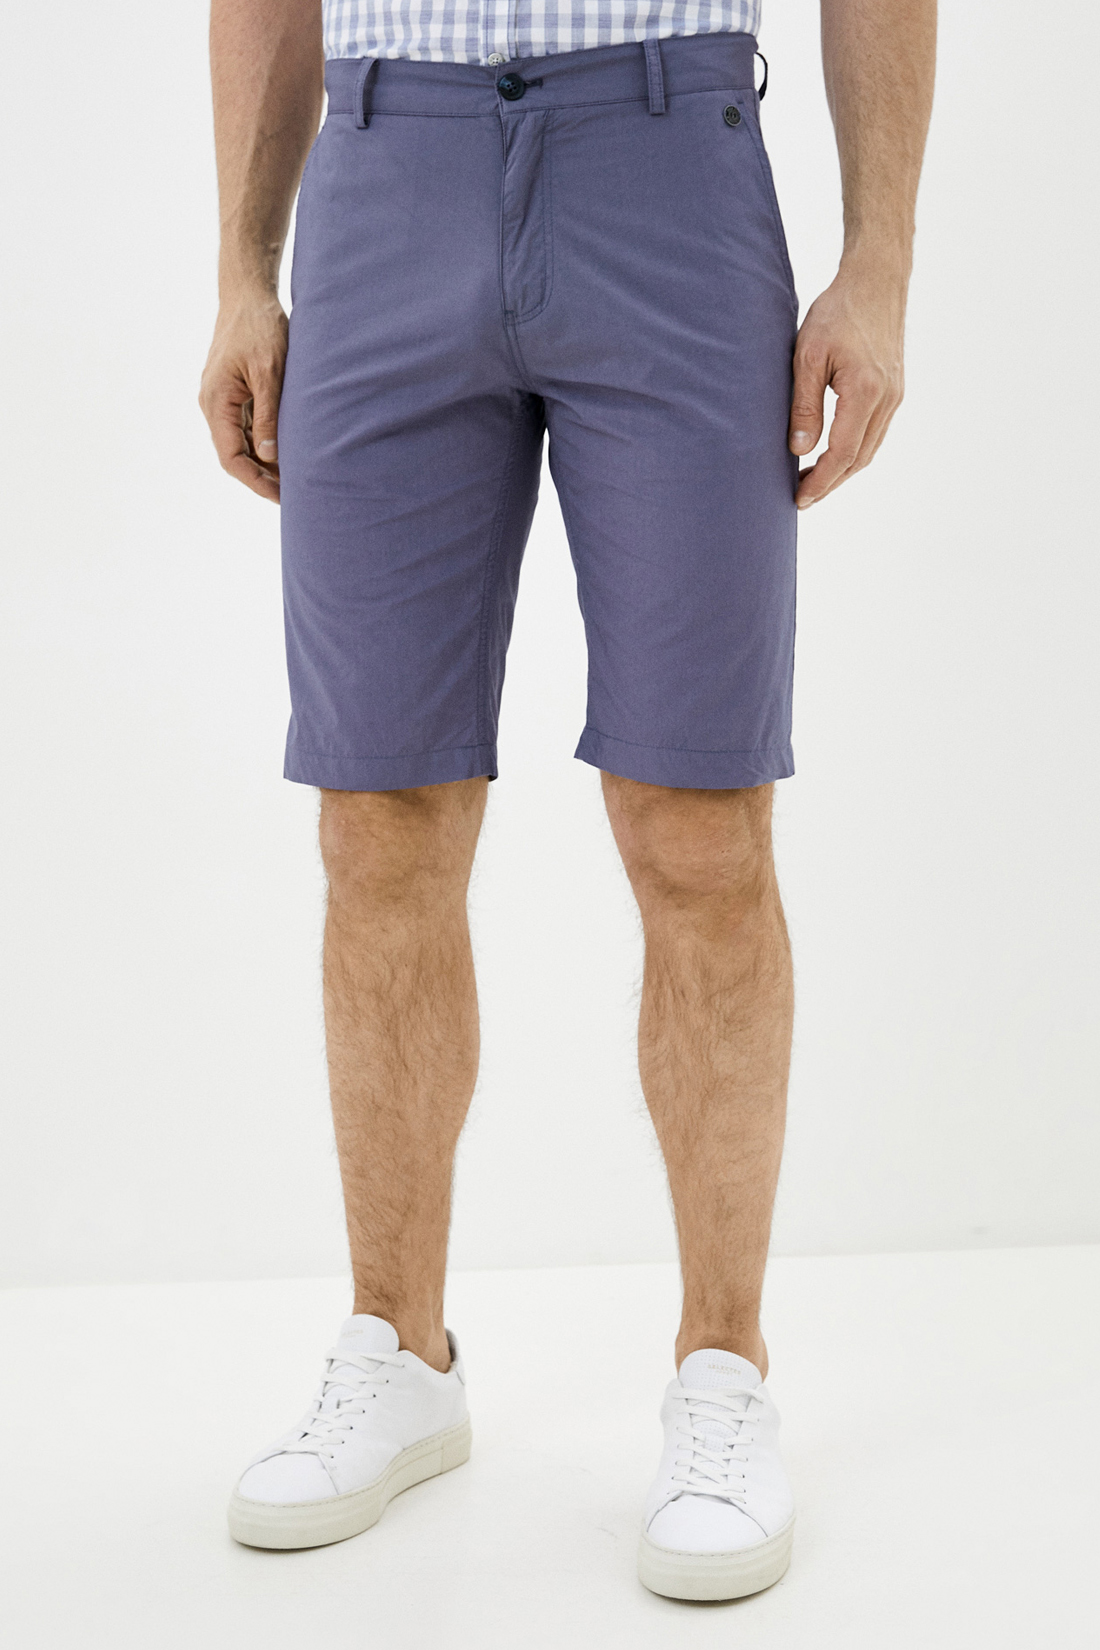 фото Повседневные шорты мужские baon b820003 фиолетовые s